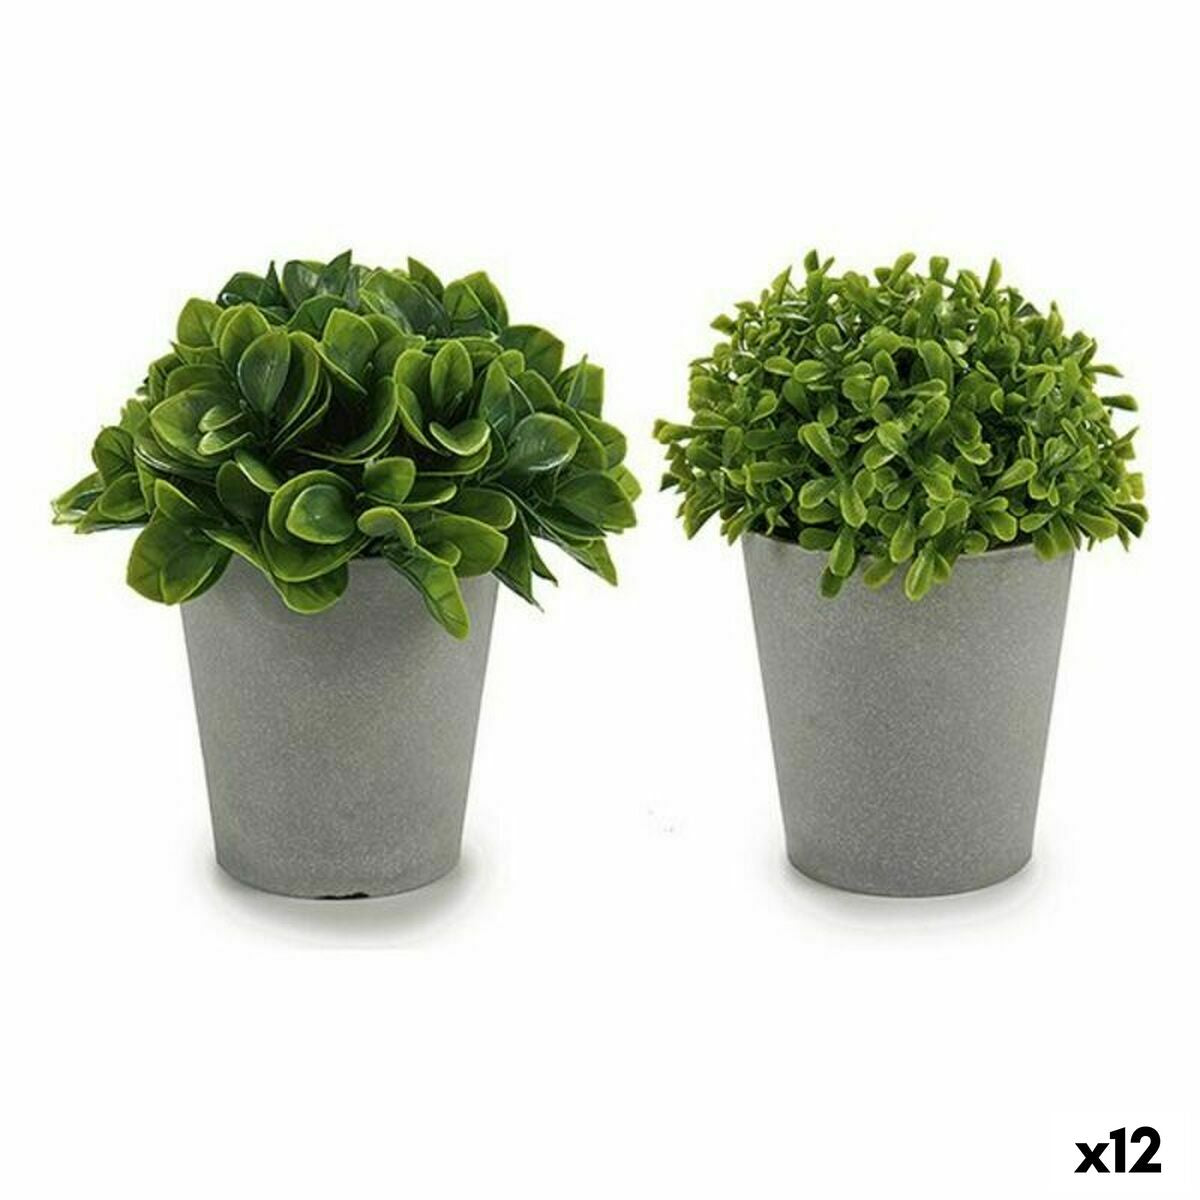 Decorative plant Plastic 13 x 17 x 13 cm (12 parts)